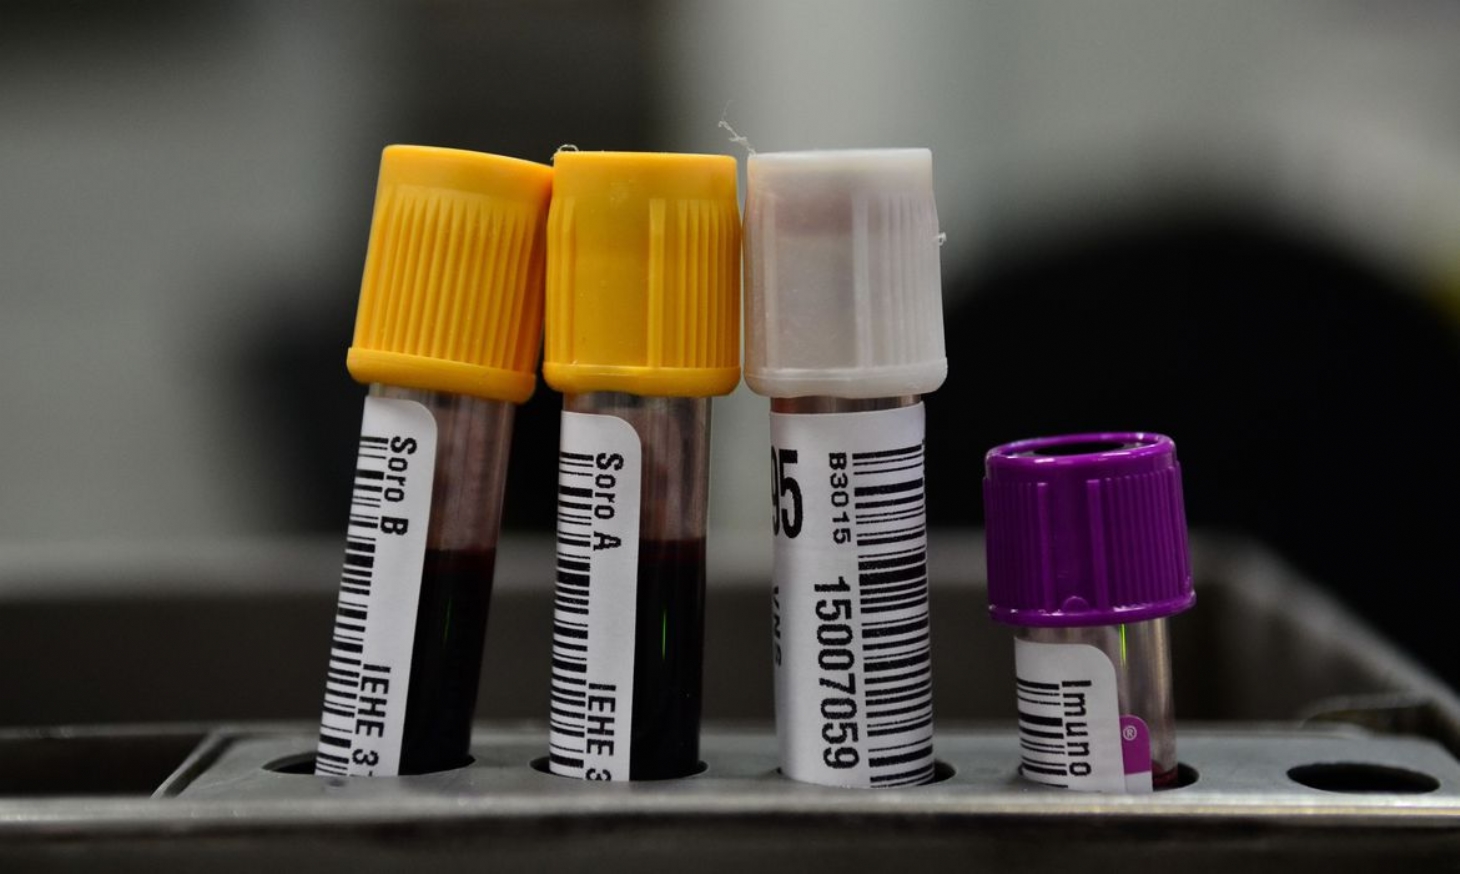 Iniciados testes com plasma sanguíneo no tratamento de covid-19 | Jornal da Orla